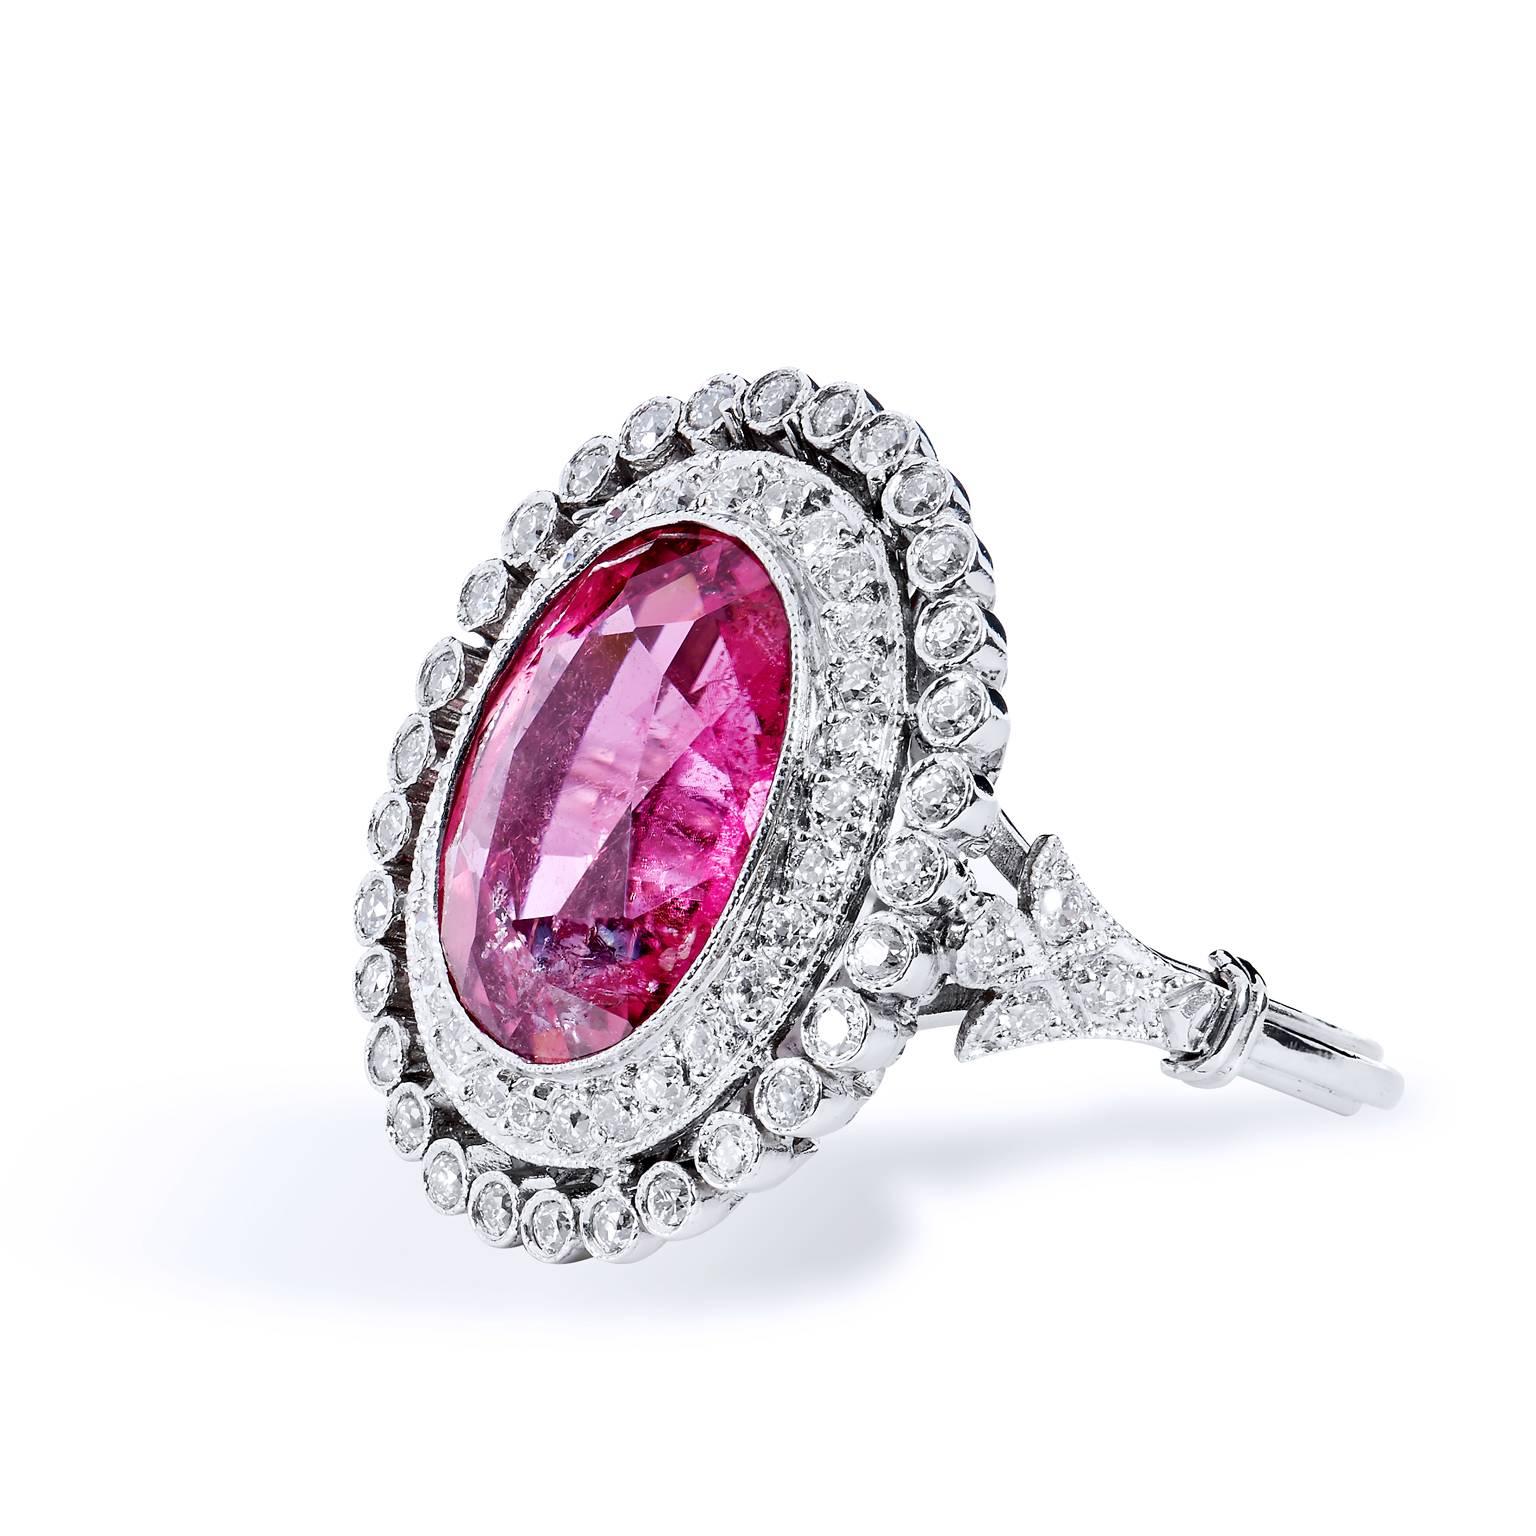 Art Deco inspiriert 5,96 Karat rosa Turmalin und Diamant Halo Platin Ring

Dies ist ein atemberaubendes Kunstwerk.  Dieser vom Art déco inspirierte Modering ist aus Platin gefertigt und zeigt einen rosa Turmalin von 5,96 Karat, der von zwei Bändern